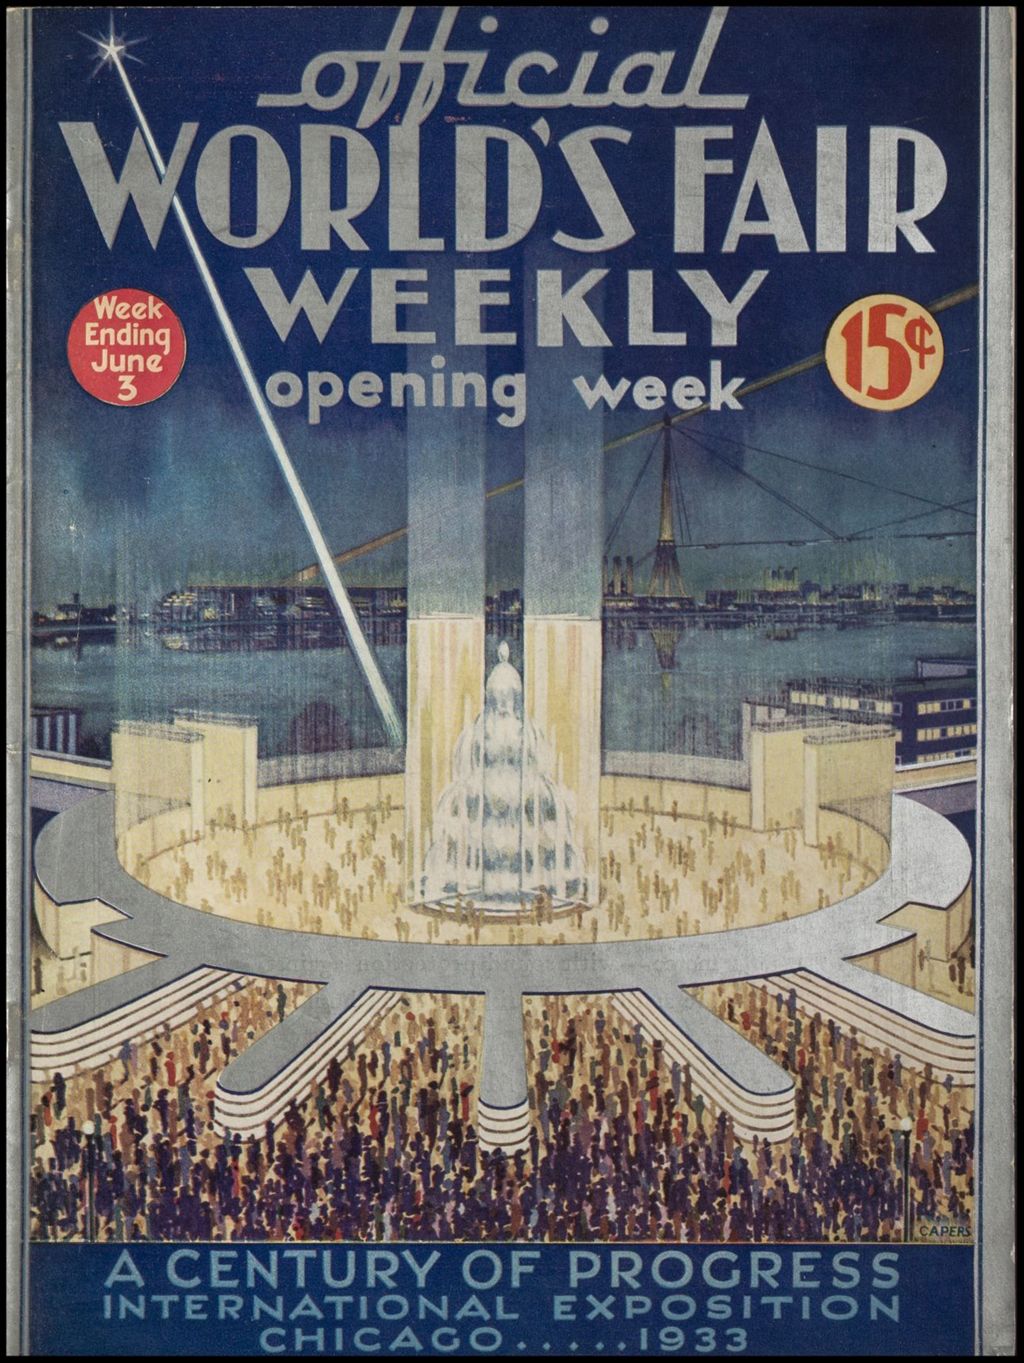 World's Fair Weekly, Week Ending June 3, 1933 (Opening Week)